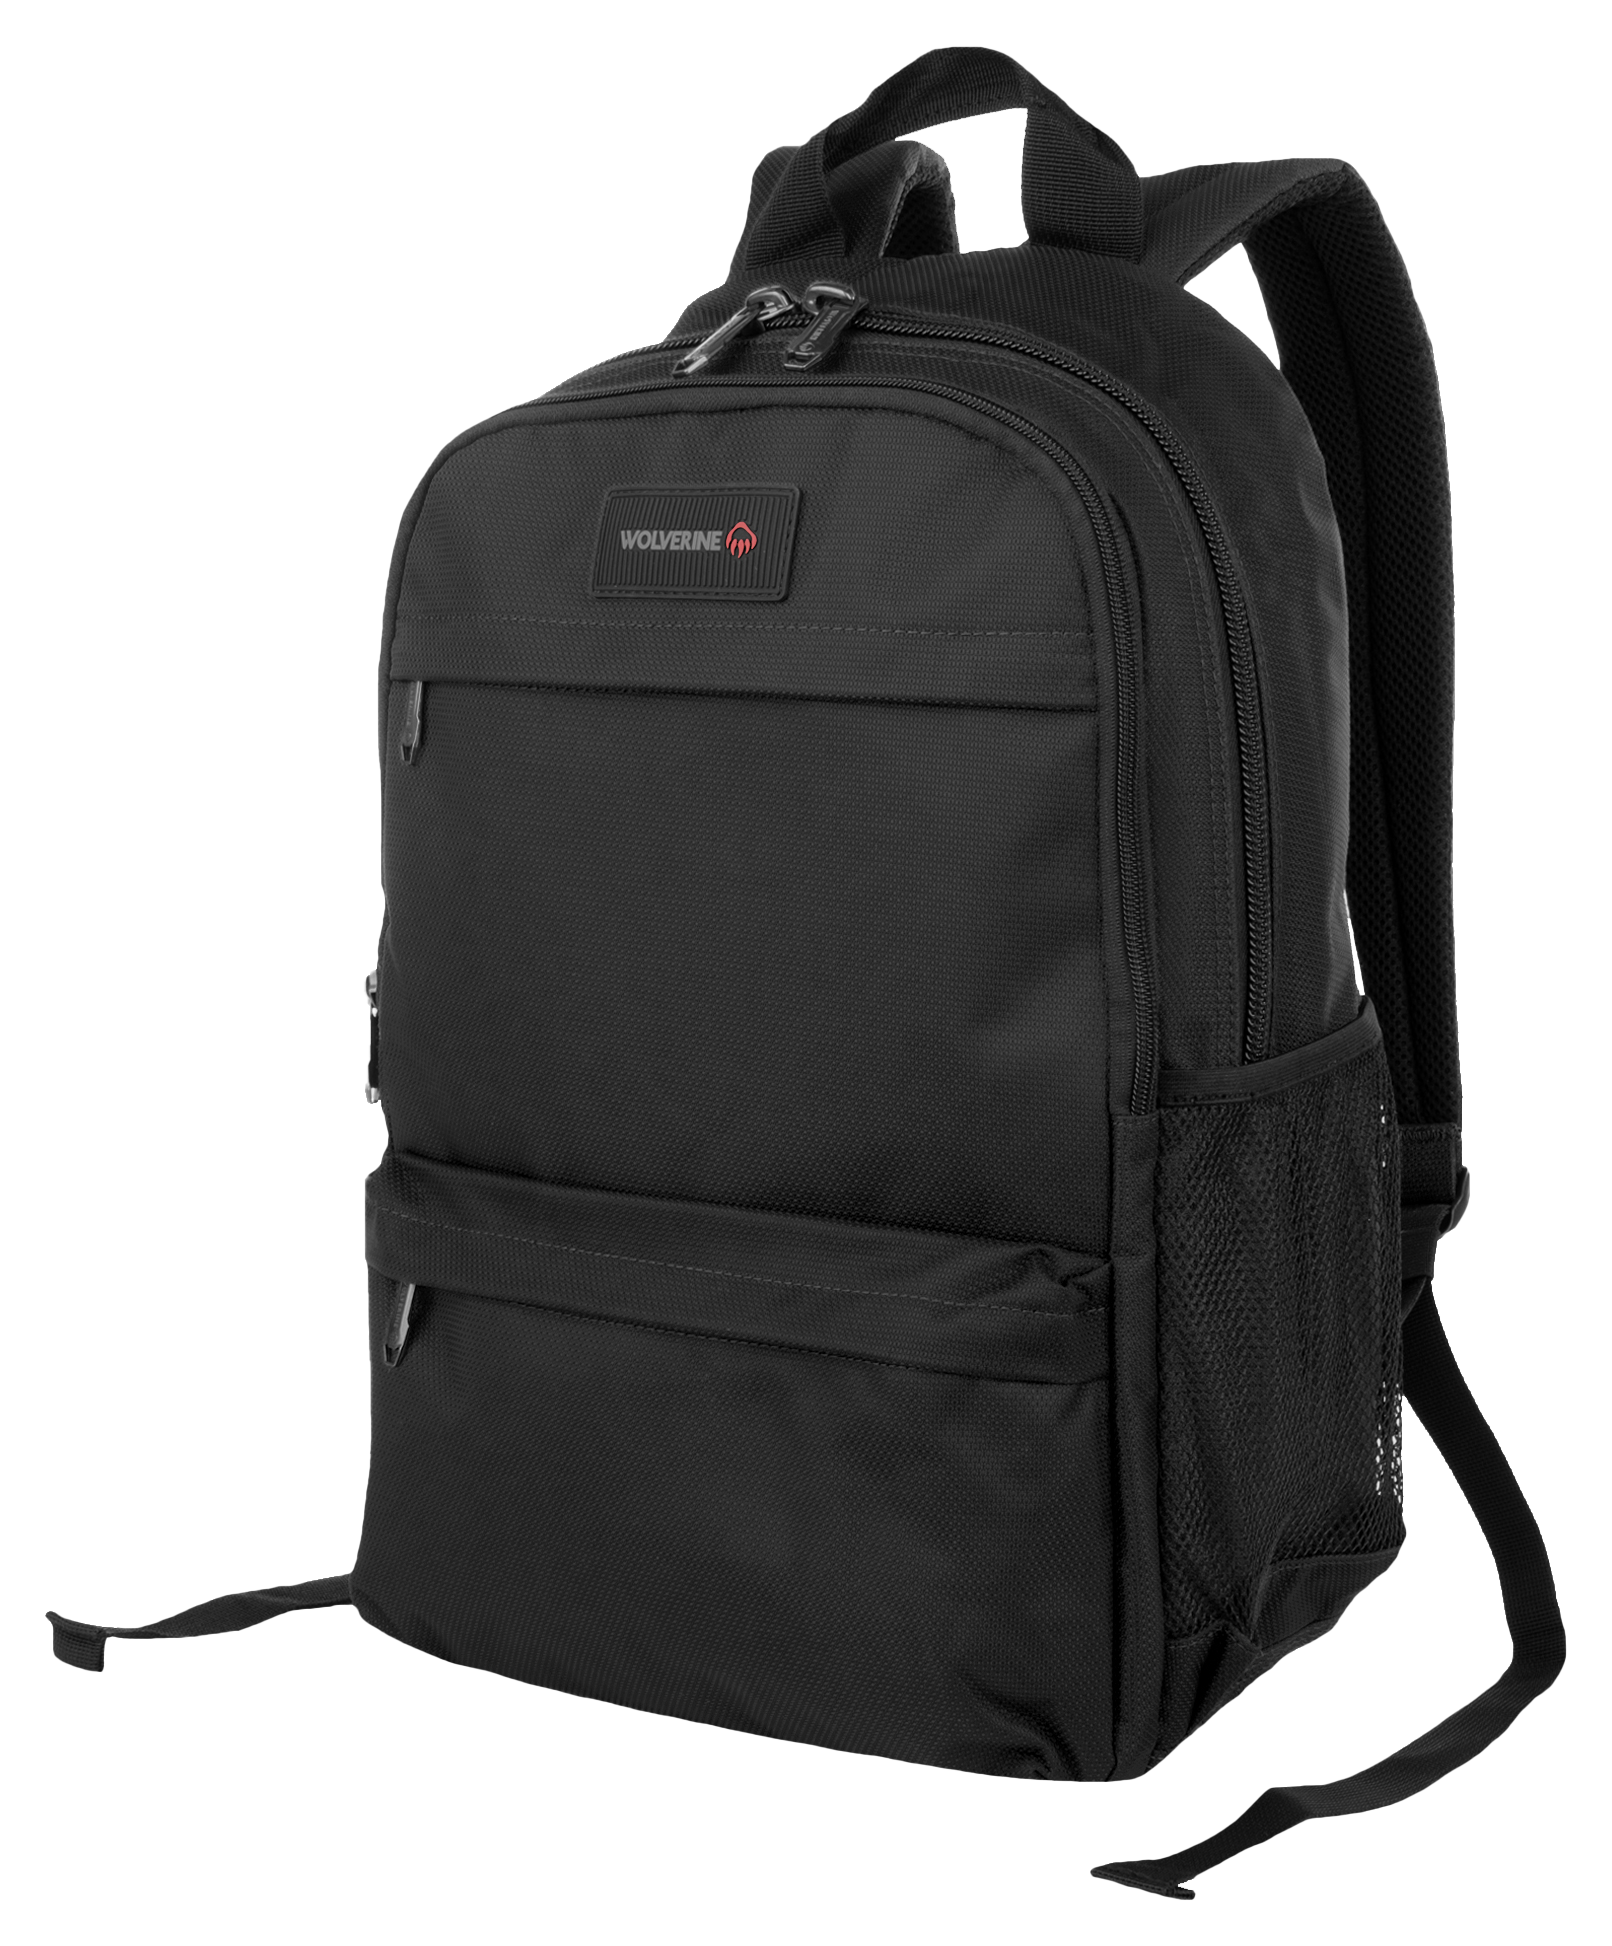 Wolverine 27L Slimline Laptop Backpack - Black